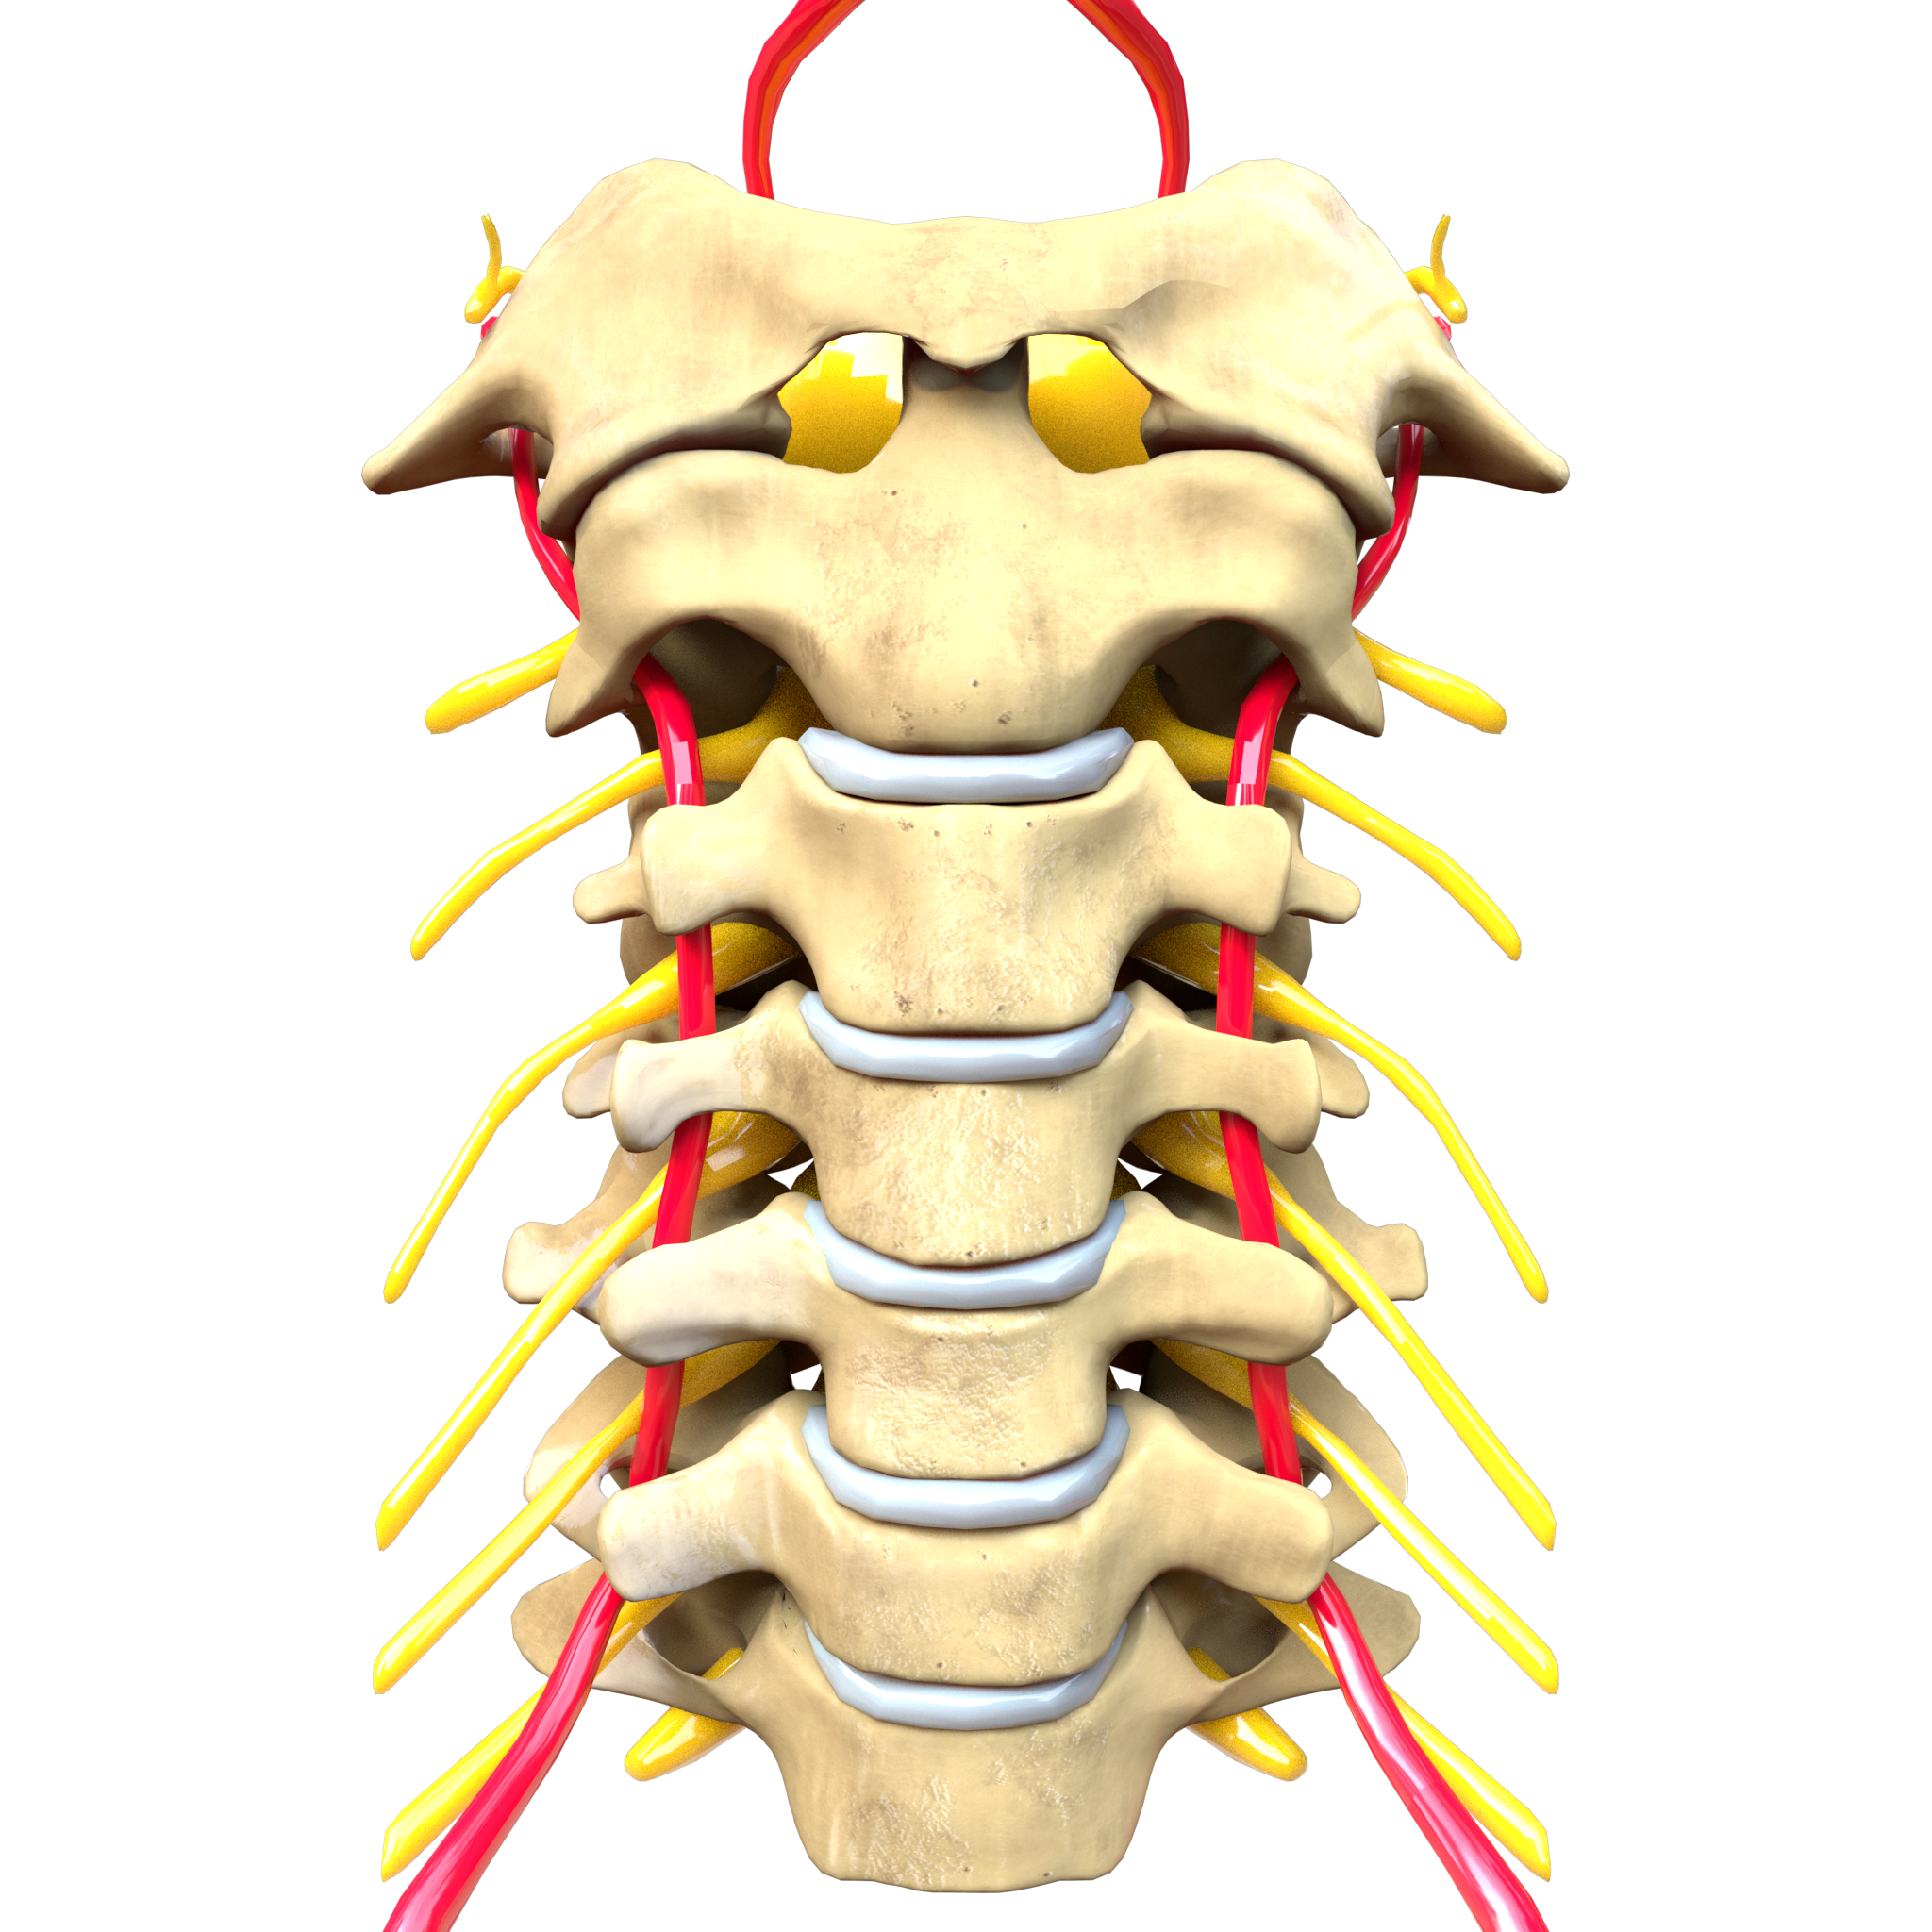 cervical spine anatomy